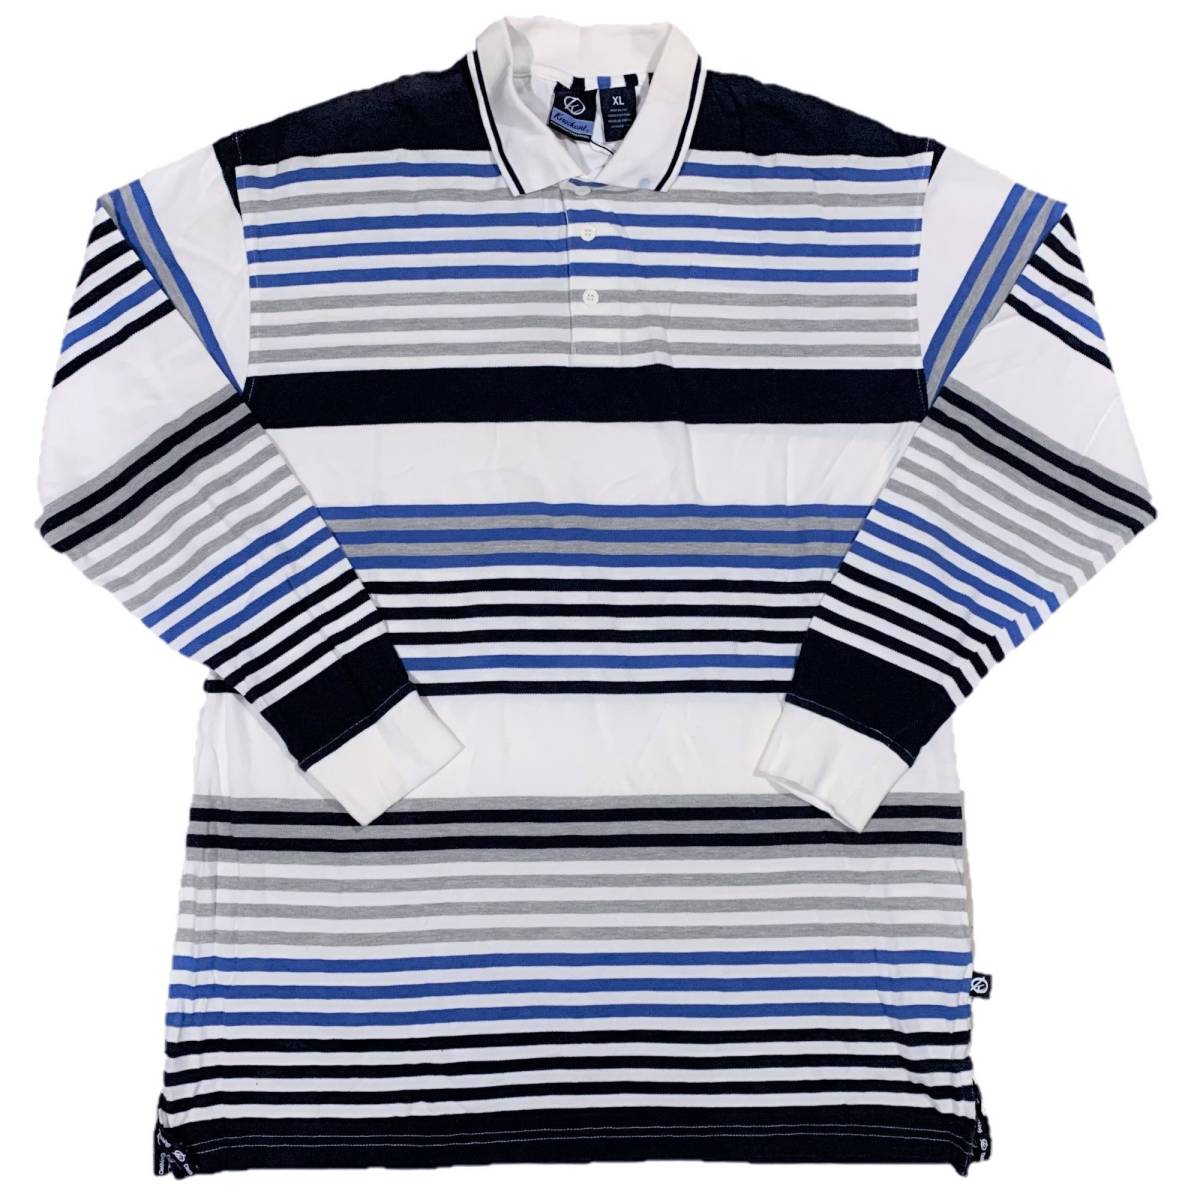 [並行輸入品] KNOCK OUT ノックアウト ロングスリーブ ポロシャツ (ブラック/ブルー/ホワイト) (XL)